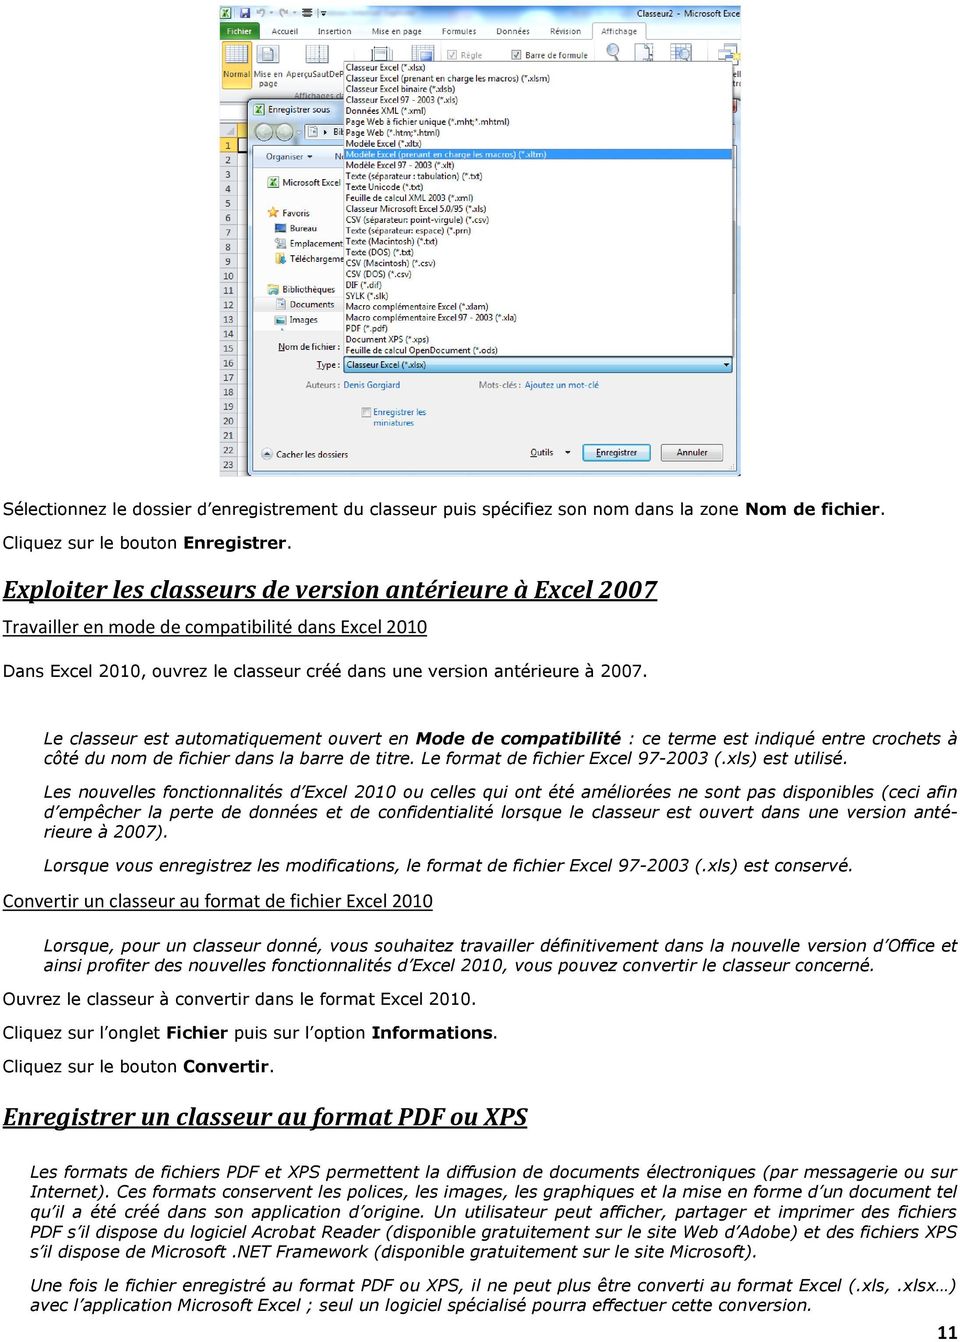 Le classeur est automatiquement ouvert en Mode de compatibilité : ce terme est indiqué entre crochets à côté du nom de fichier dans la barre de titre. Le format de fichier Excel 97-2003 (.